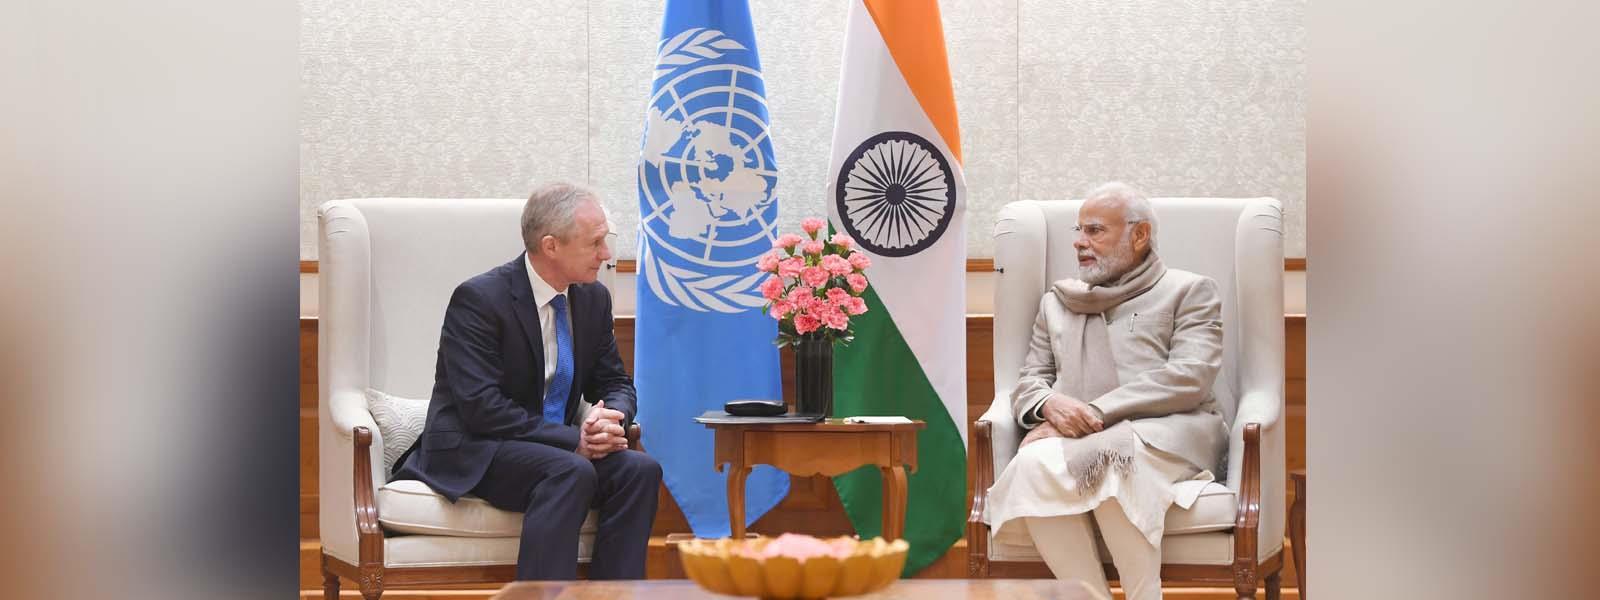 संयुक्त राष्ट्र महासभा के अध्यक्ष महामहिम श्री साबा कोरोसी की नई दिल्ली में प्रधानमंत्री श्री नरेंद्र मोदी से भेंट